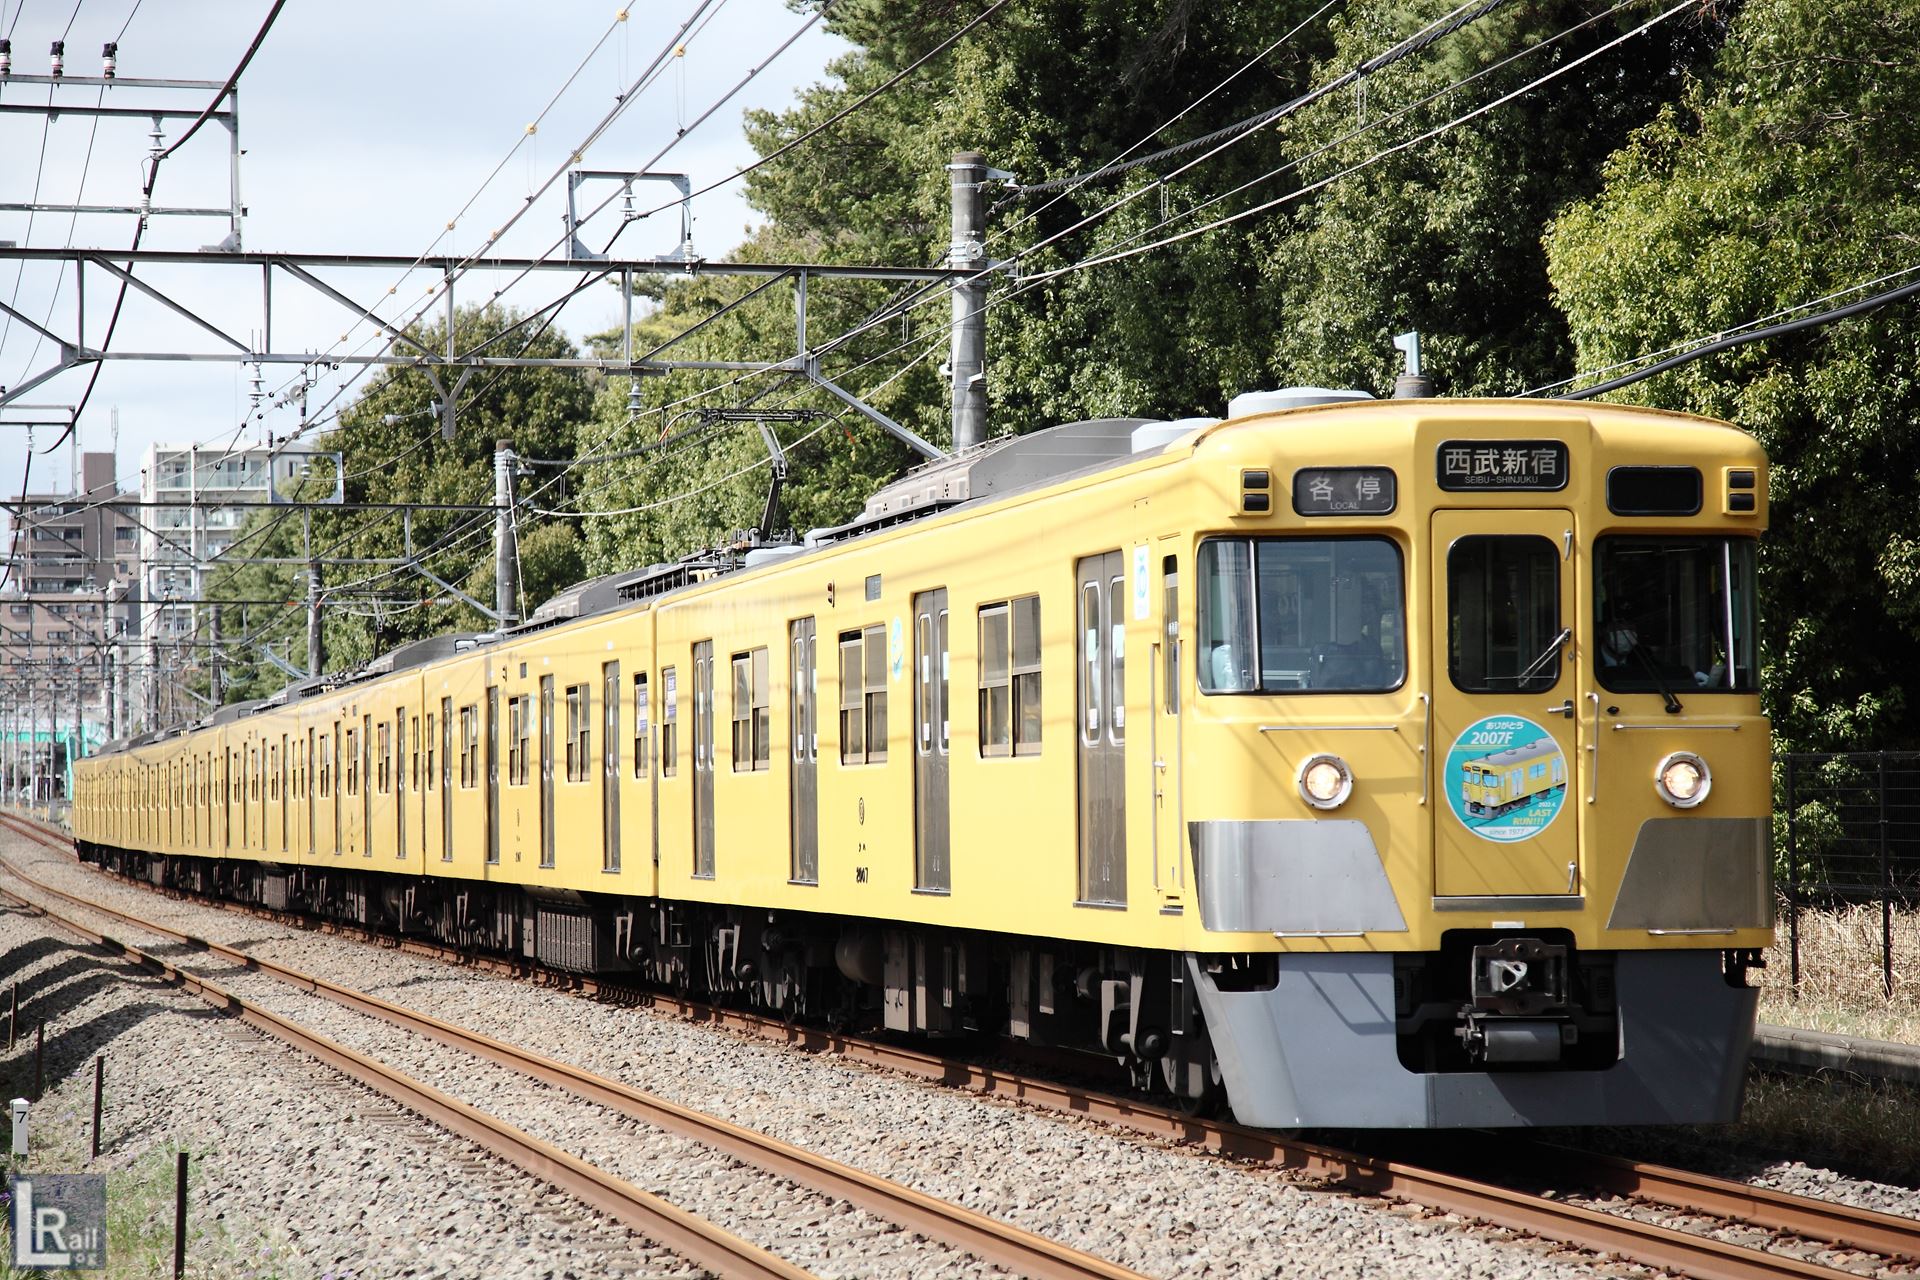 2007Fは西武2000系最後の8両編成として新宿線で活躍を続けている黄色い電車。